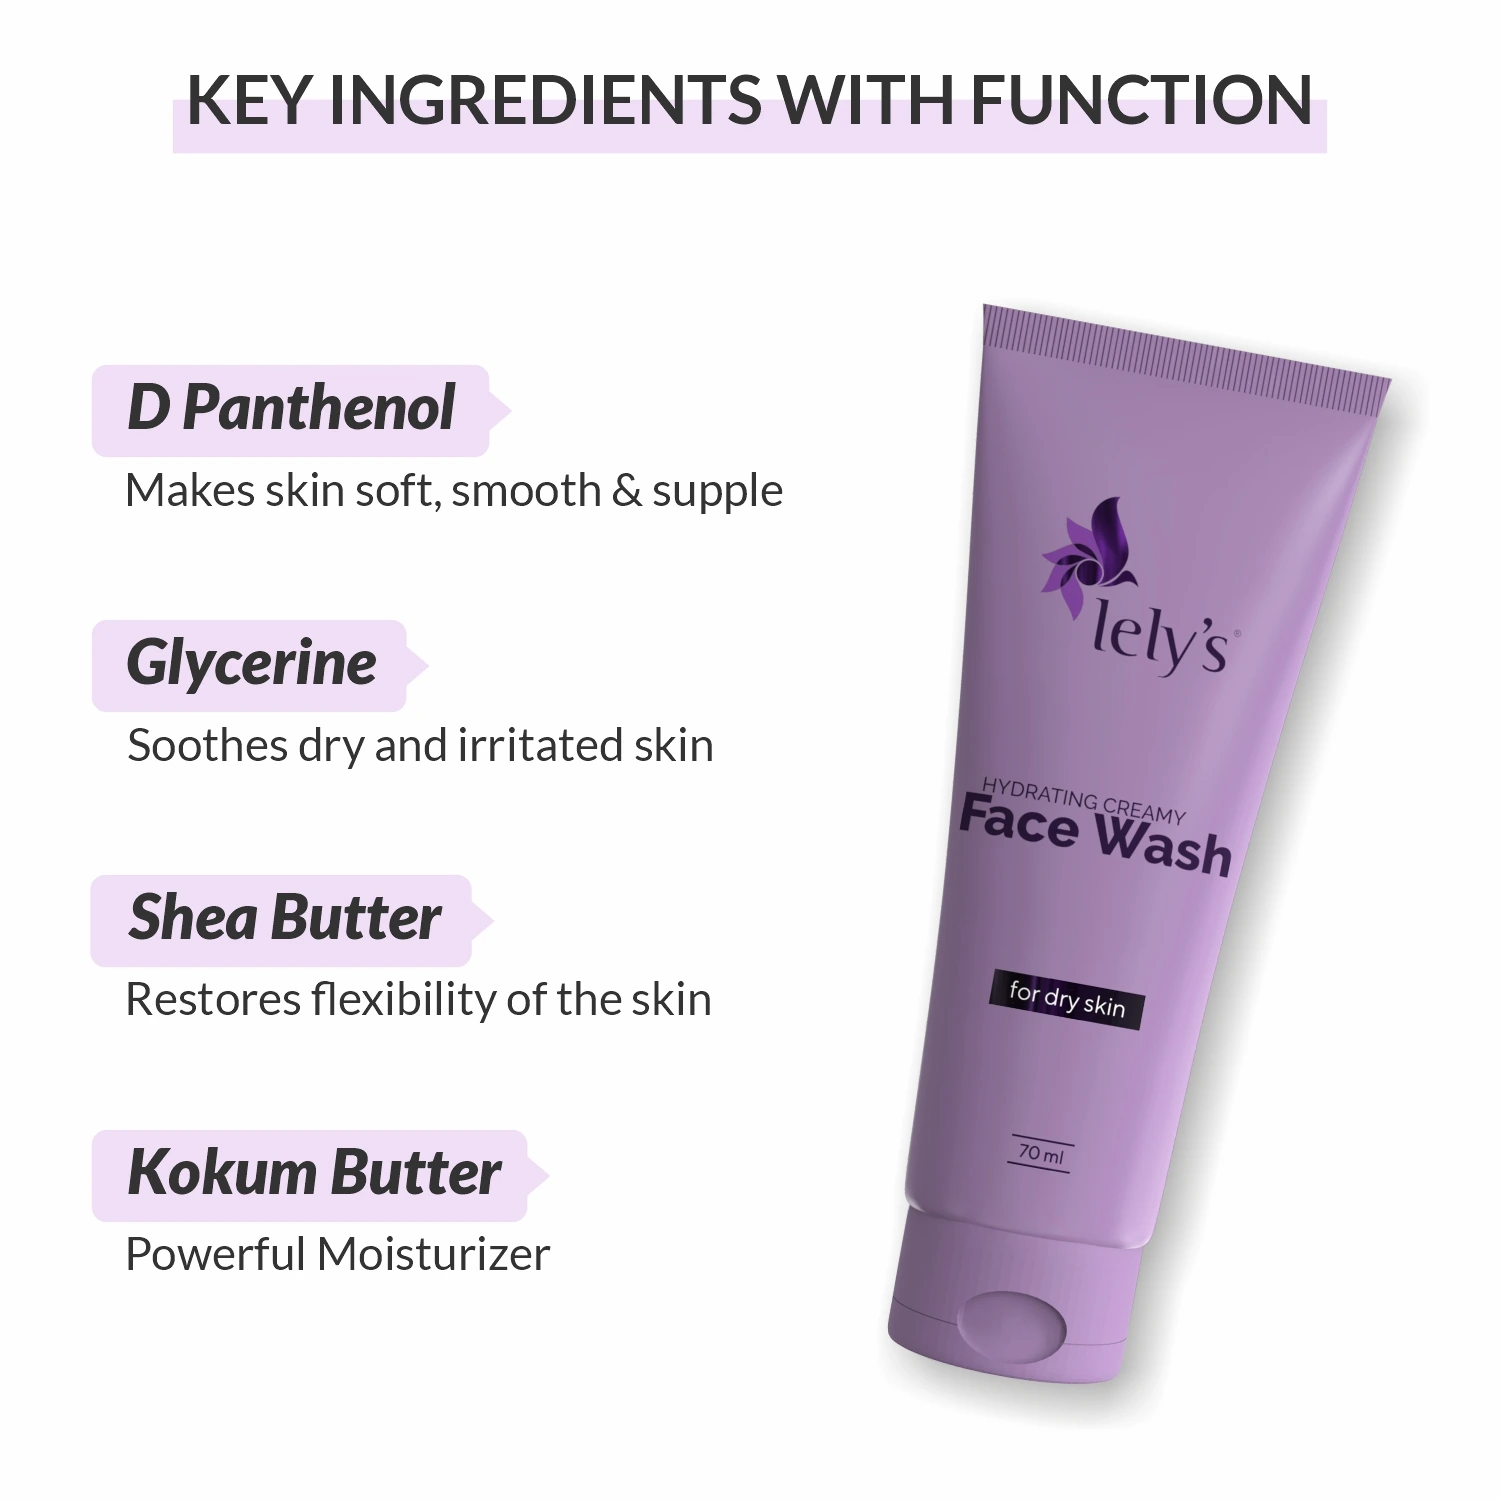 Hydrating creamy Facewash Ingredients